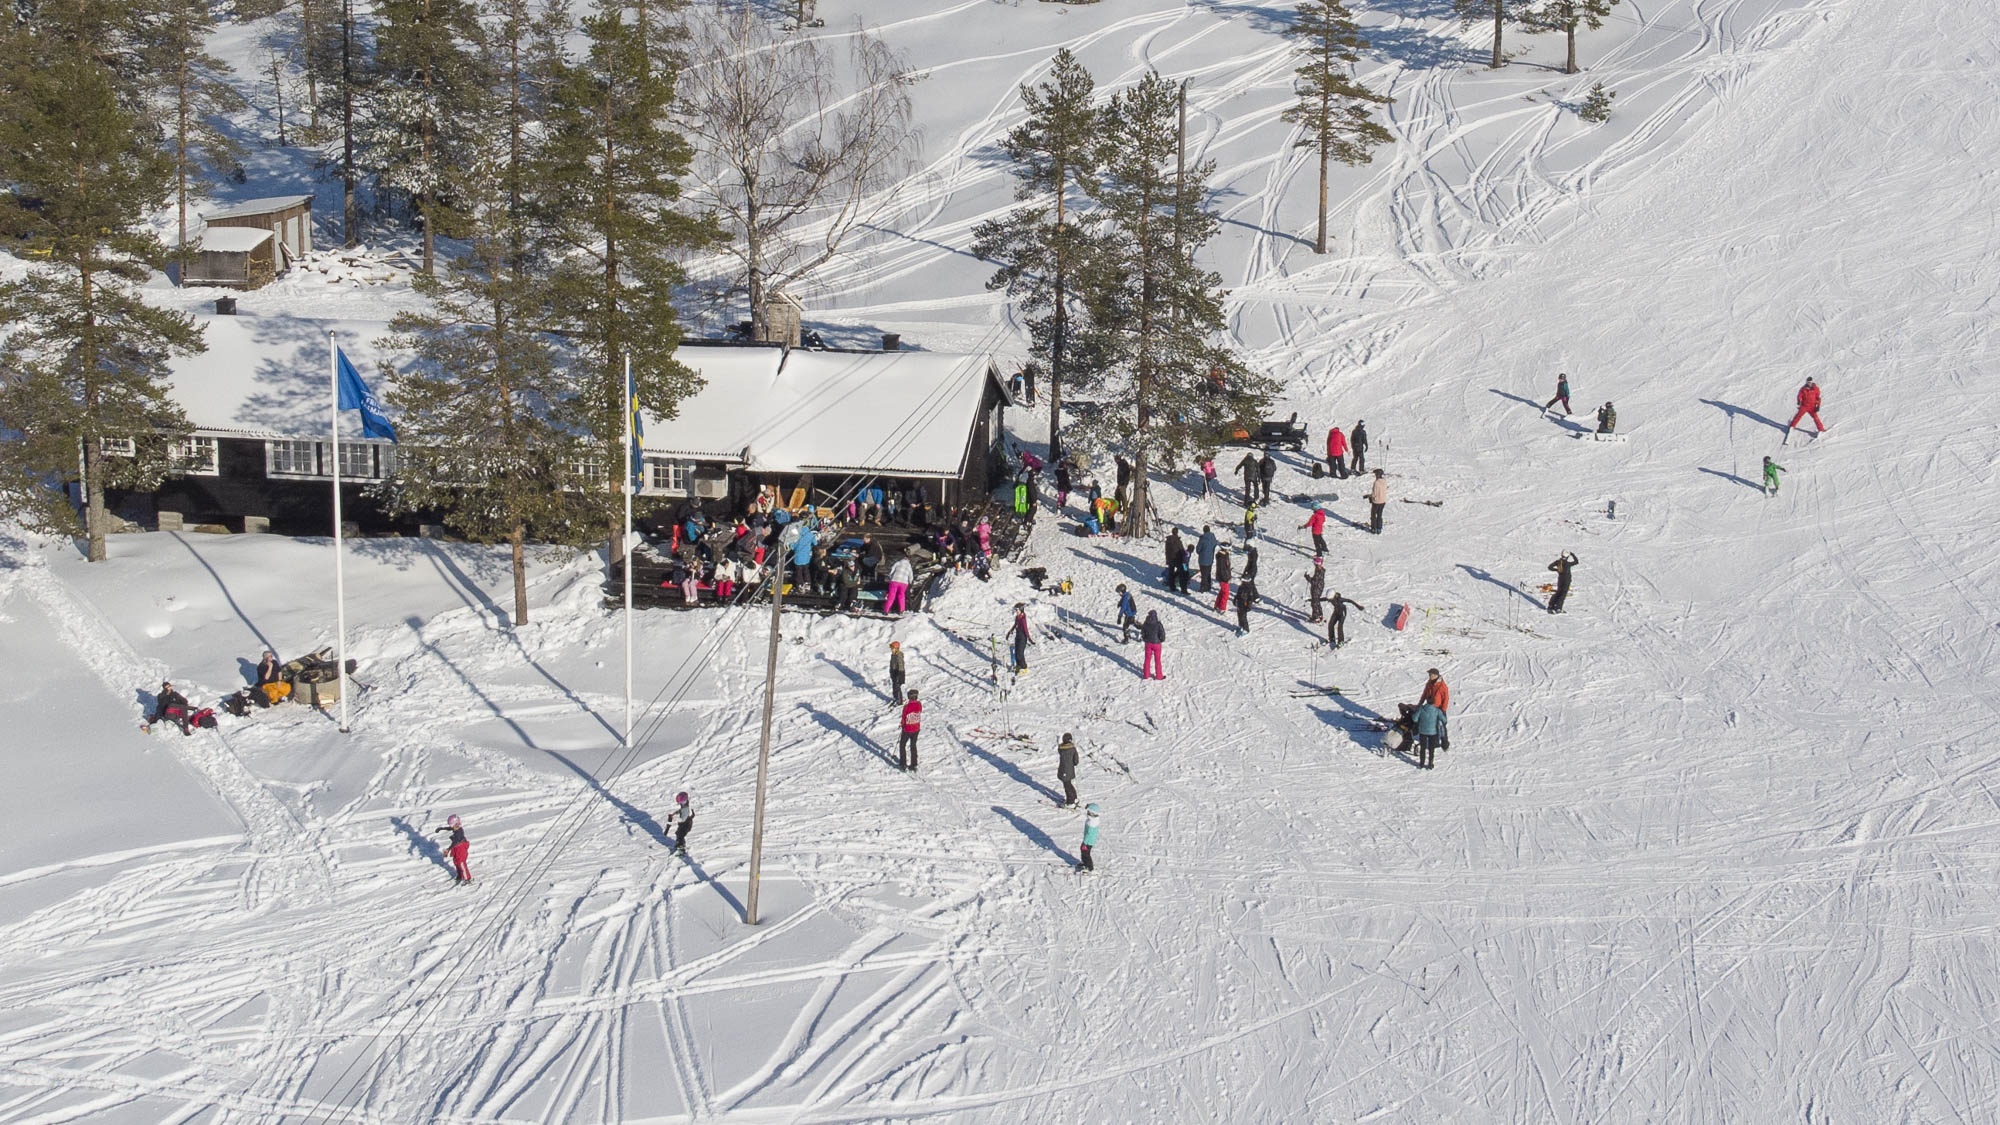 Gratis Skifahren für alle Kinder und Erwachsene